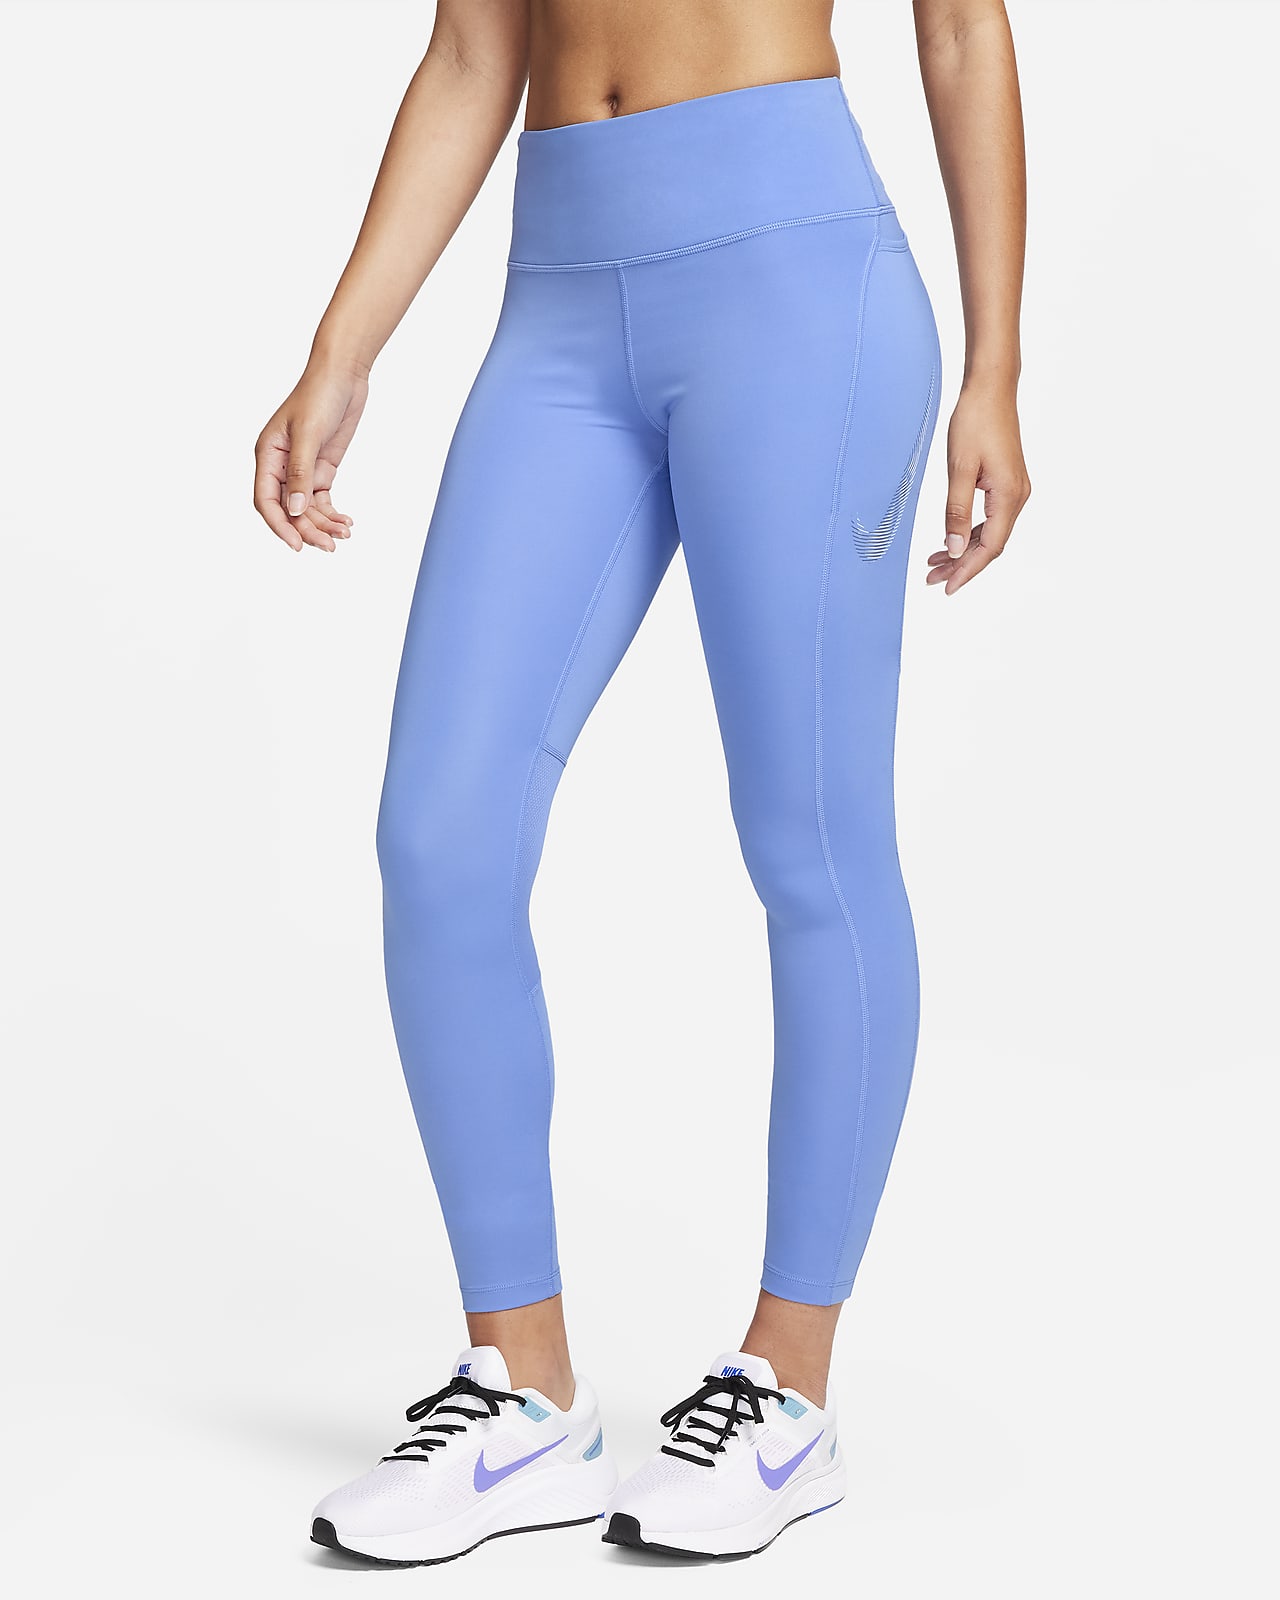 Legging 7/8 taille mi-haute avec motifs et poches Nike Fast pour femme